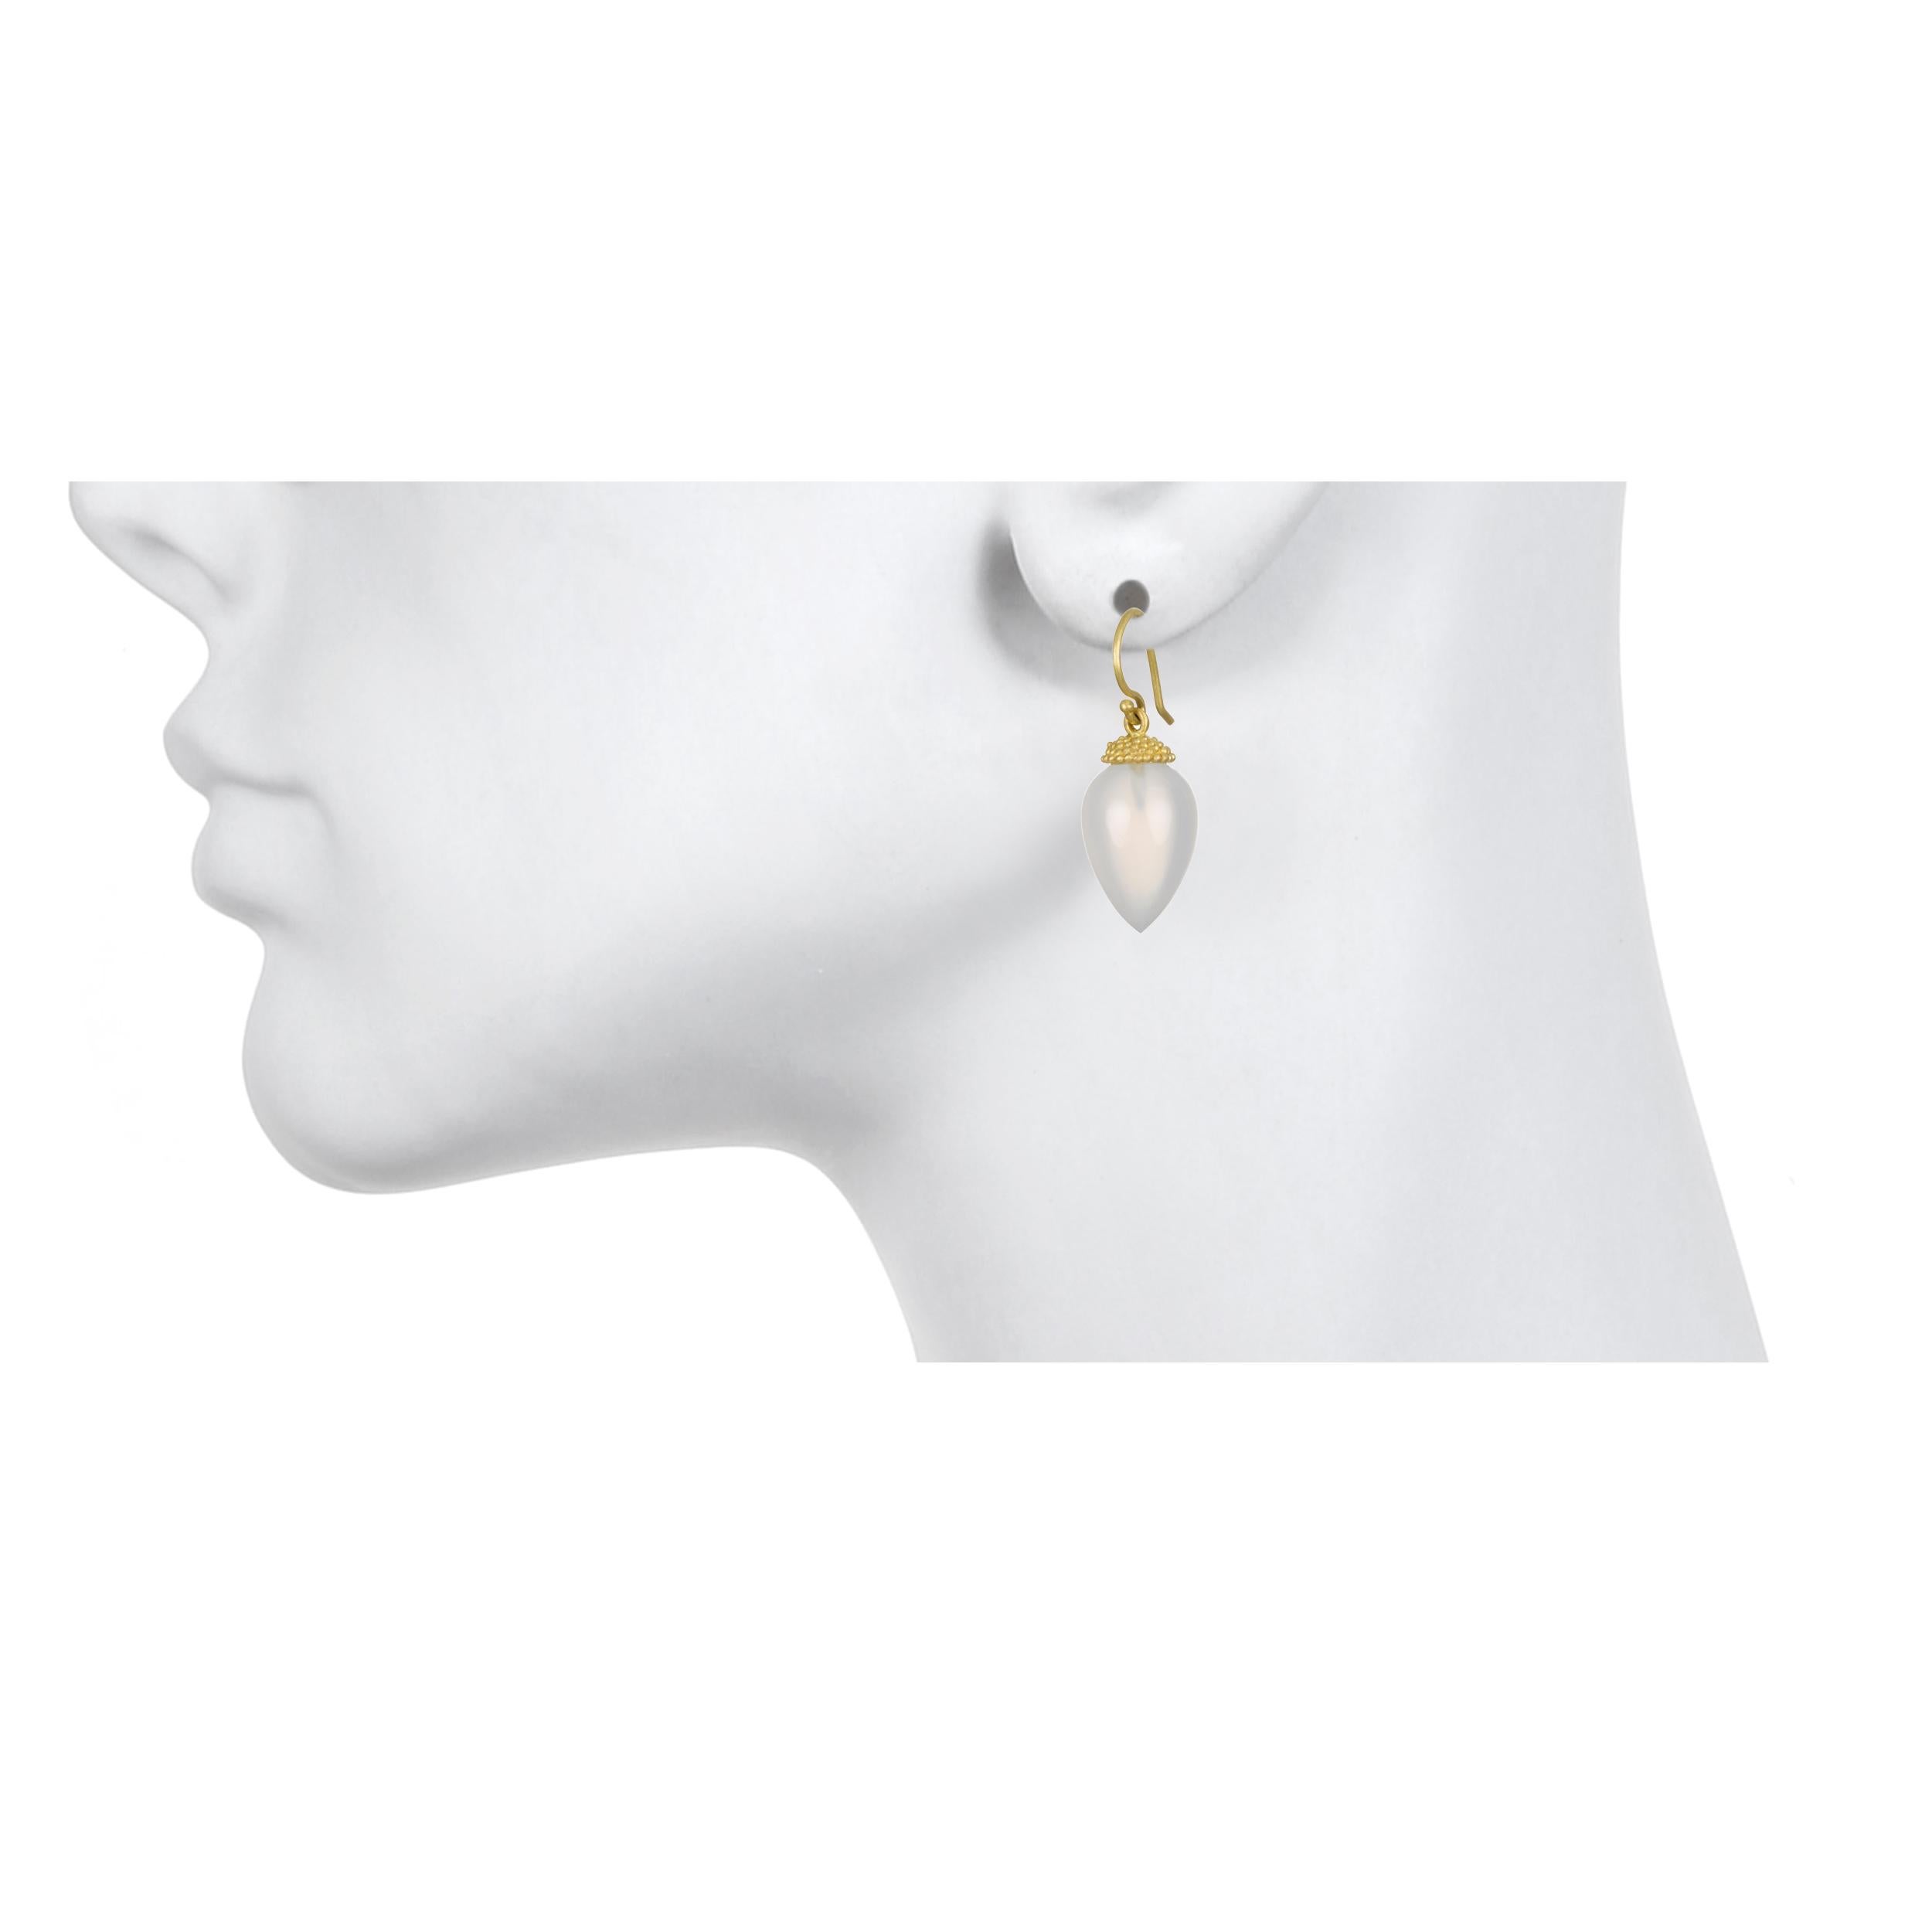 Schönheit in der Einfachheit.  Diese Acorn-Ohrringe aus 18-karätigem Gold in rauchigem Weiß sind einfach zu tragen, schmeicheln und passen zu fast allem. Die Ohrringe sind mit einer Granulationskappe aus 18 Karat Gold und französischen Ohrdrähten